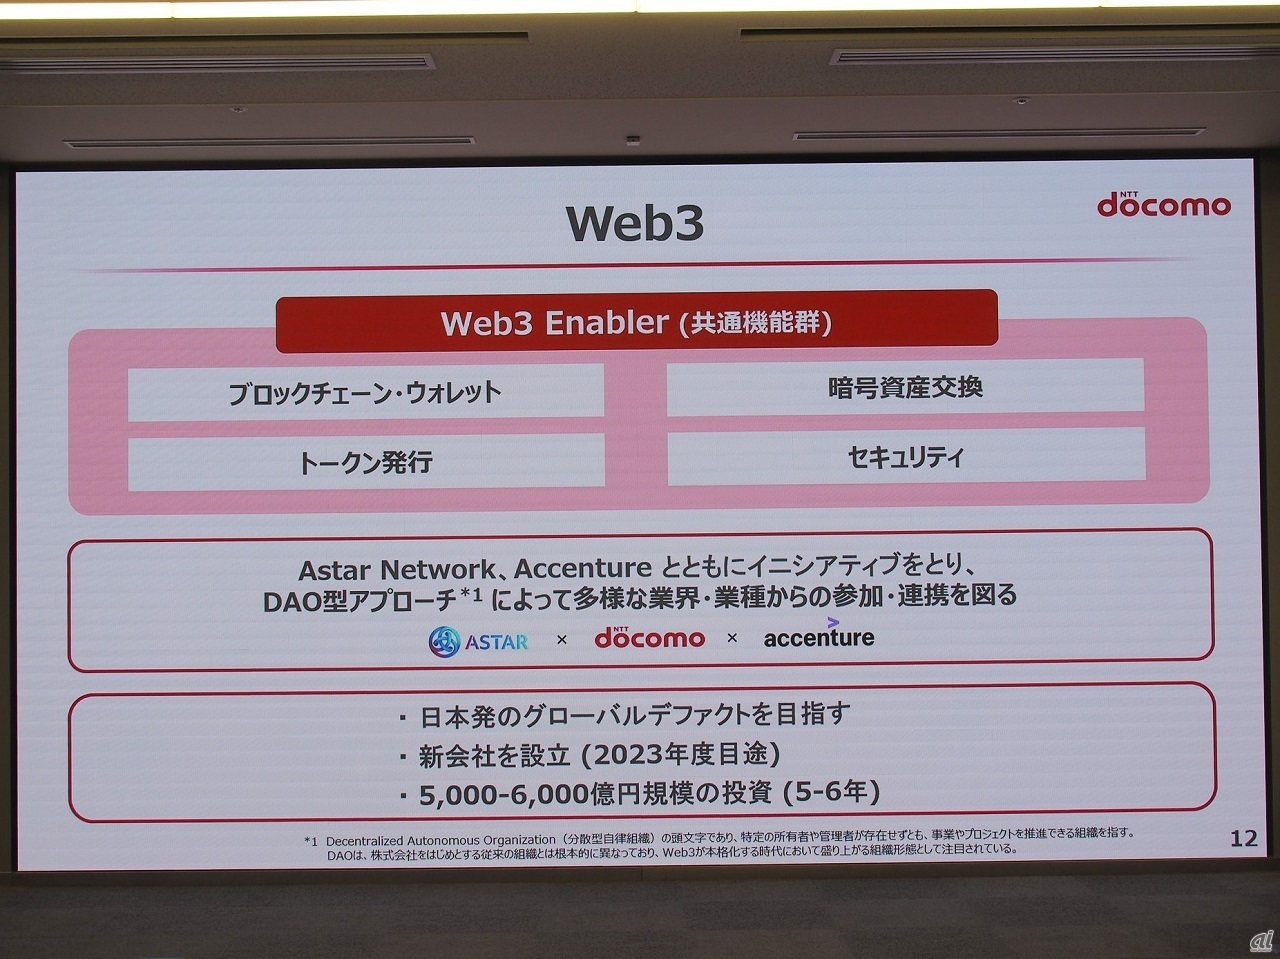 ドコモはWeb3関連のサービスを提供する基盤となる「Web3 Enabler」の提供を表明、Web3関連の事業に5000～6000億円もの大規模投資をしていくことも明らかにした